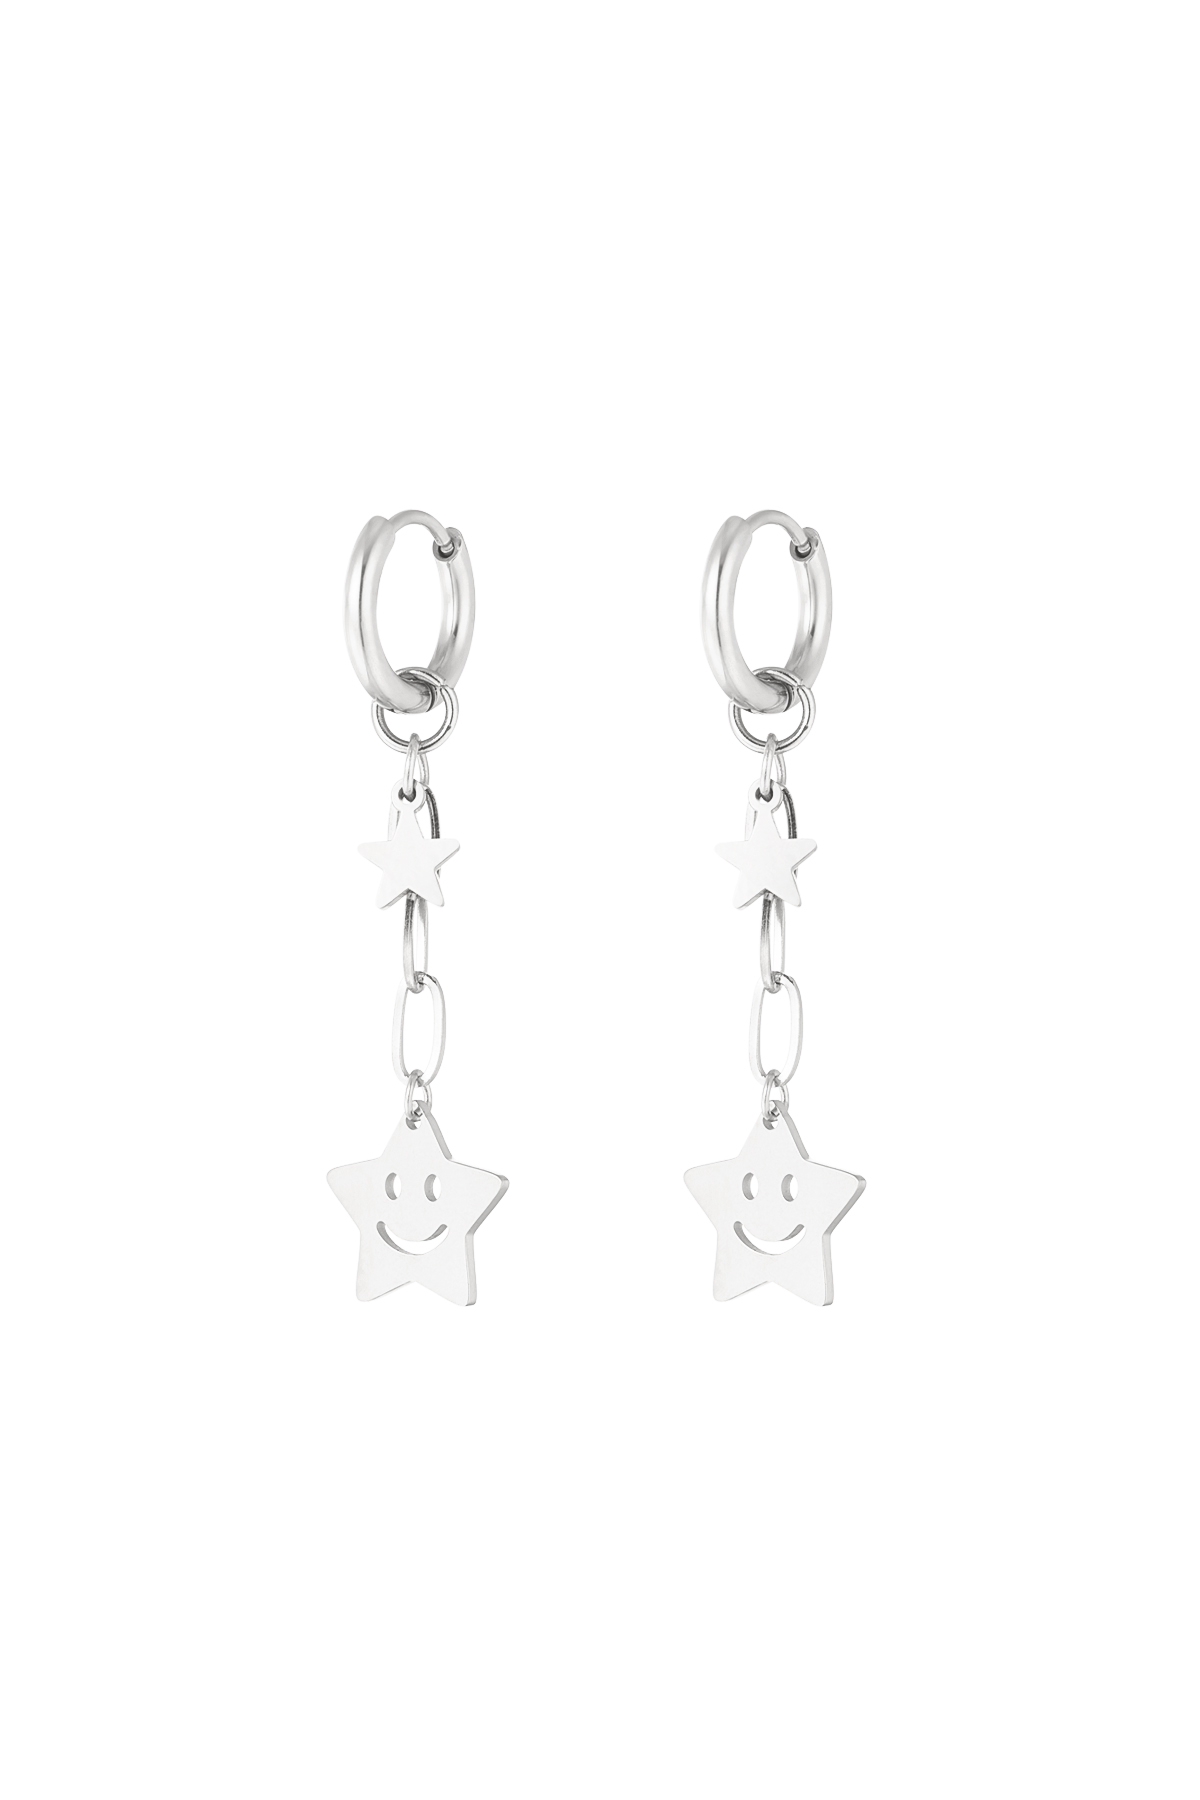 Happy star earrings - silver  h5 